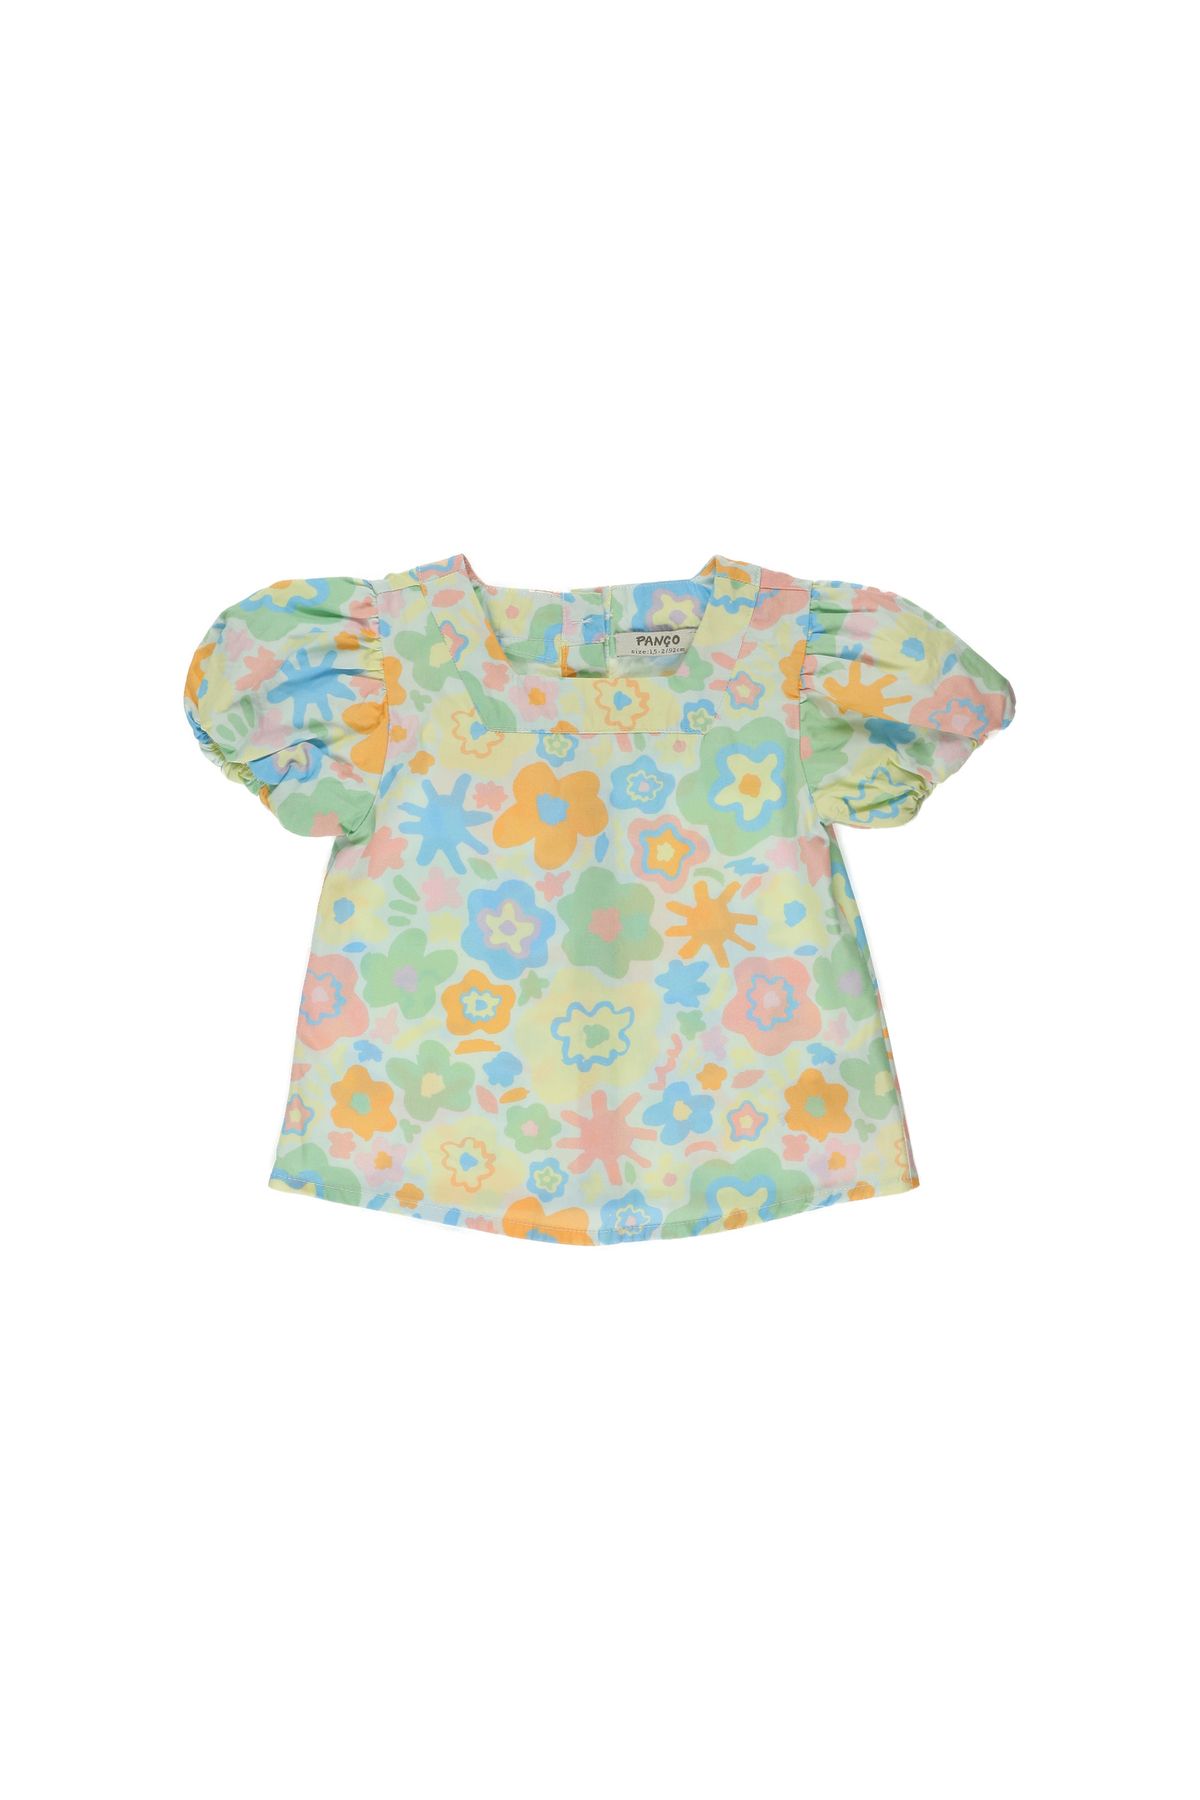 Panço Kız Bebek Çiçek Desenli Bluz